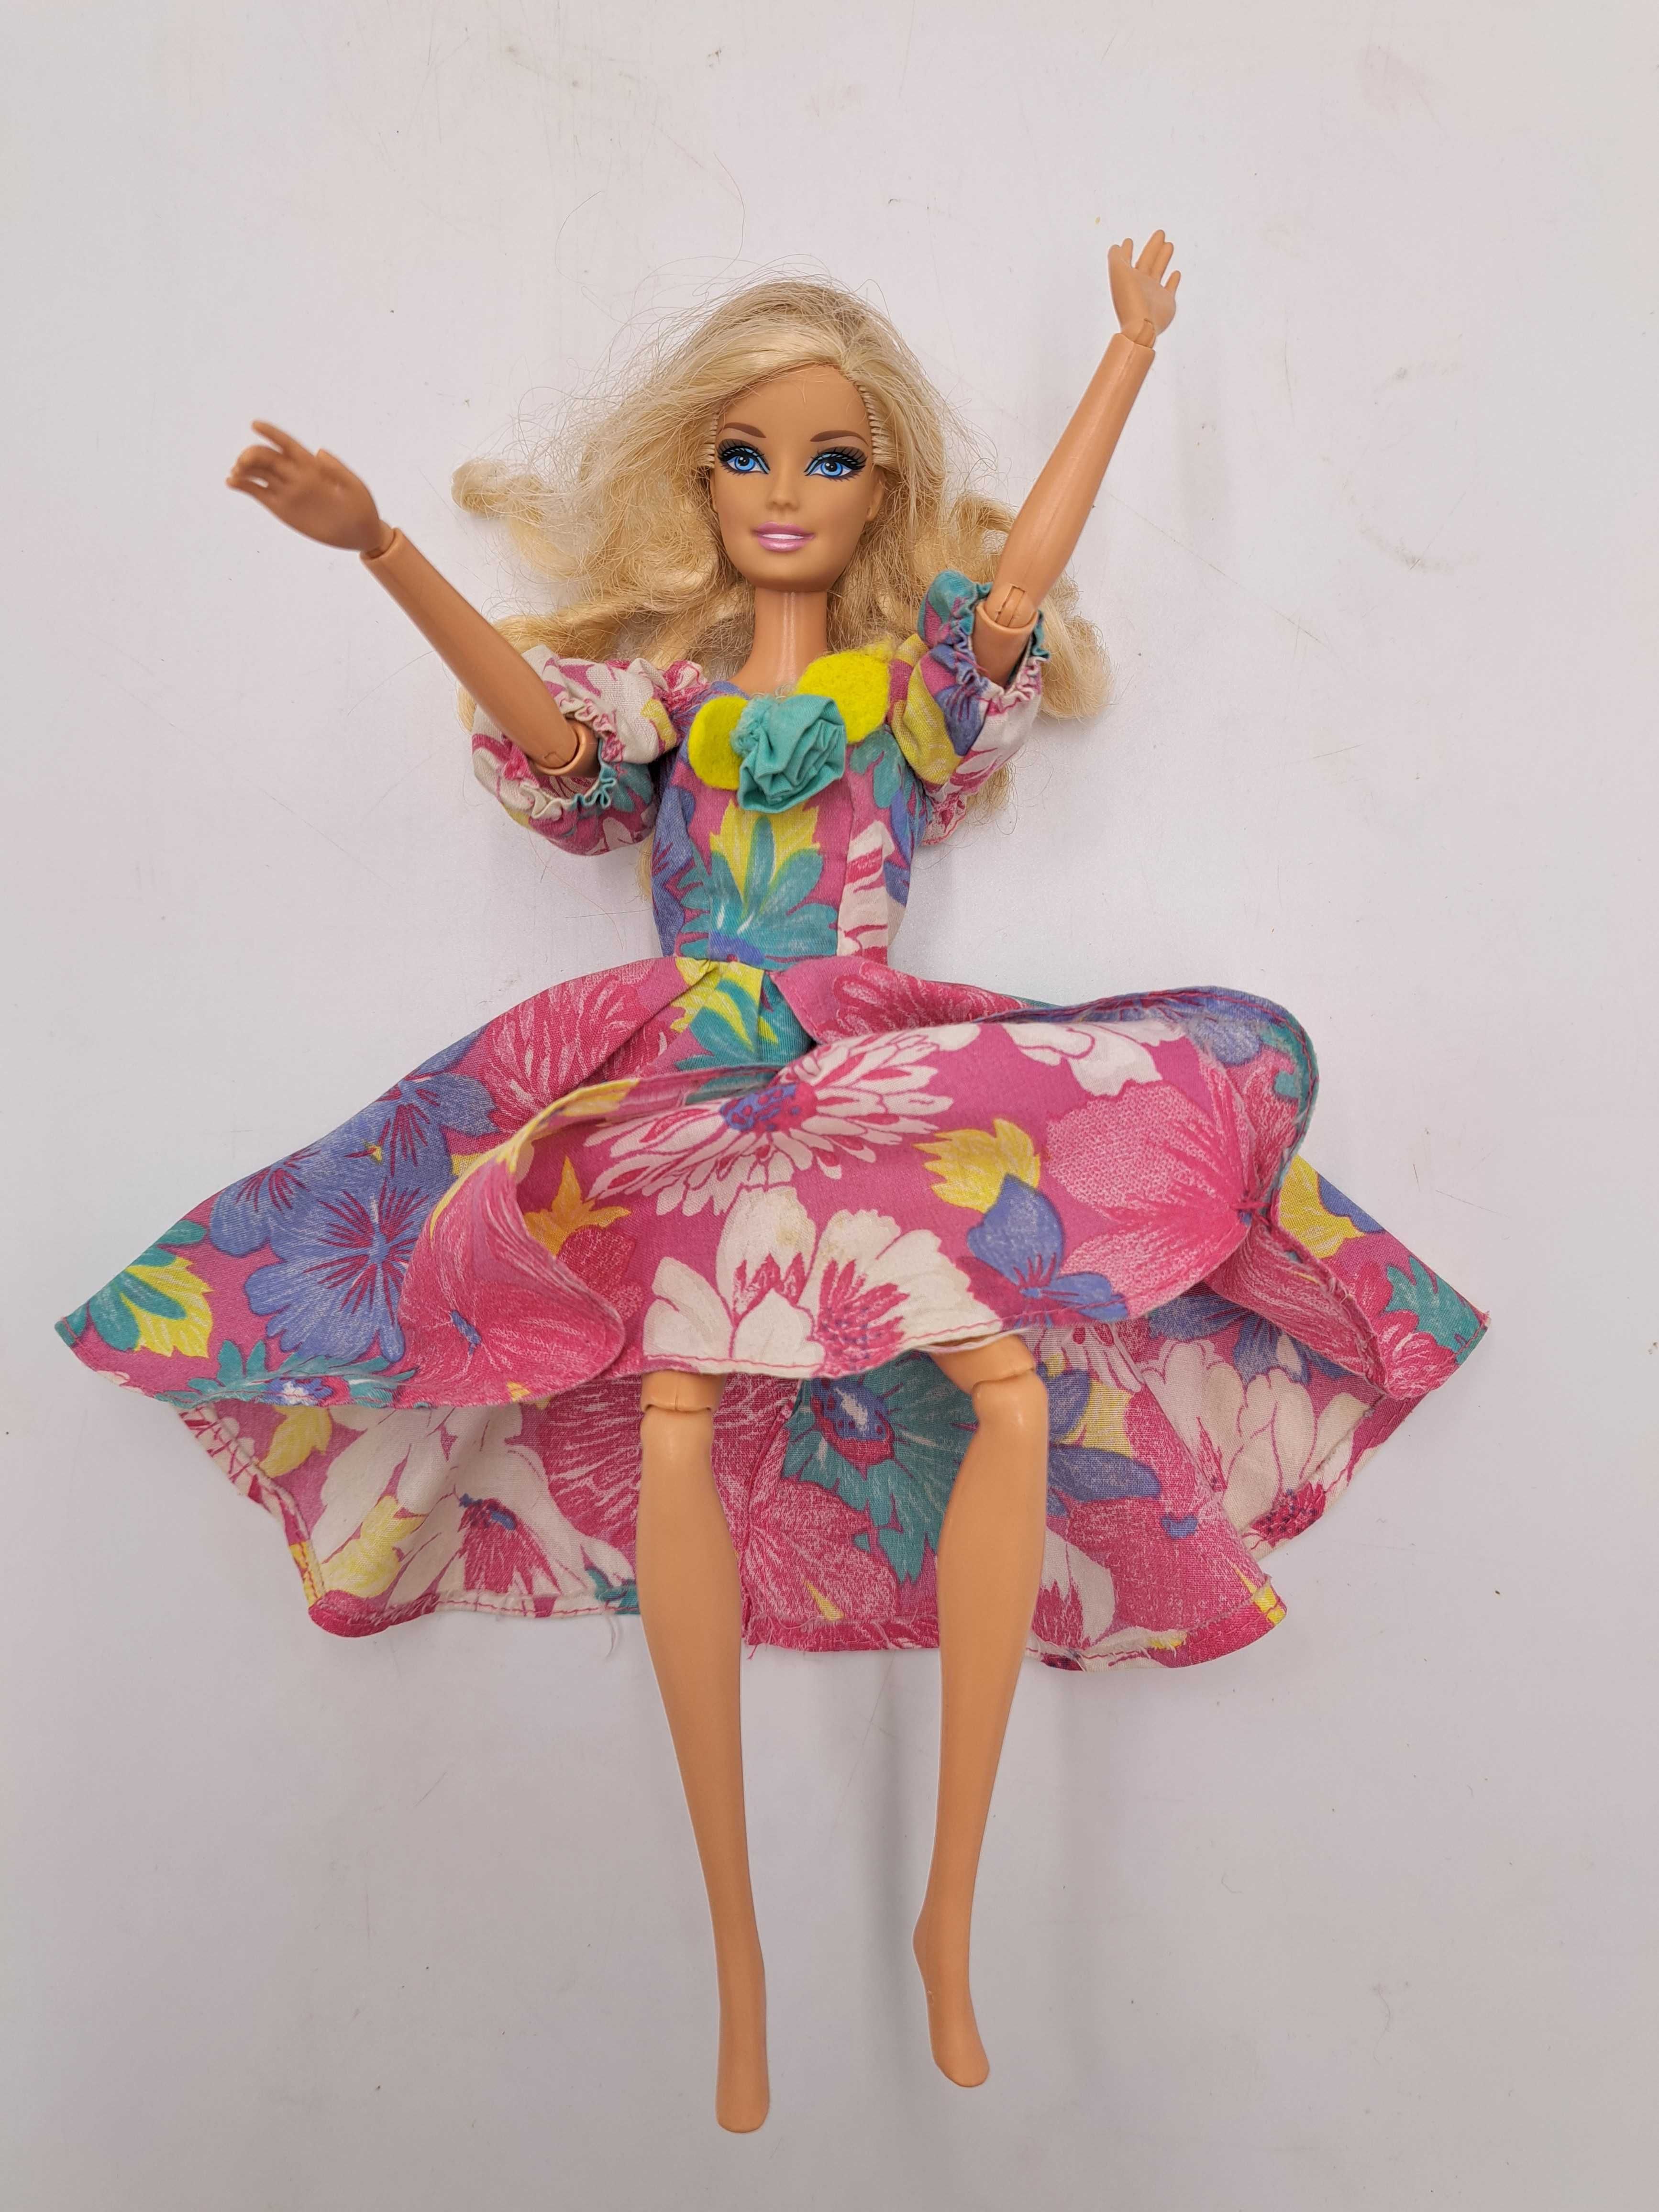 Lalka Barbie Mattel 1998 długie kręcone blond włosy, vintage